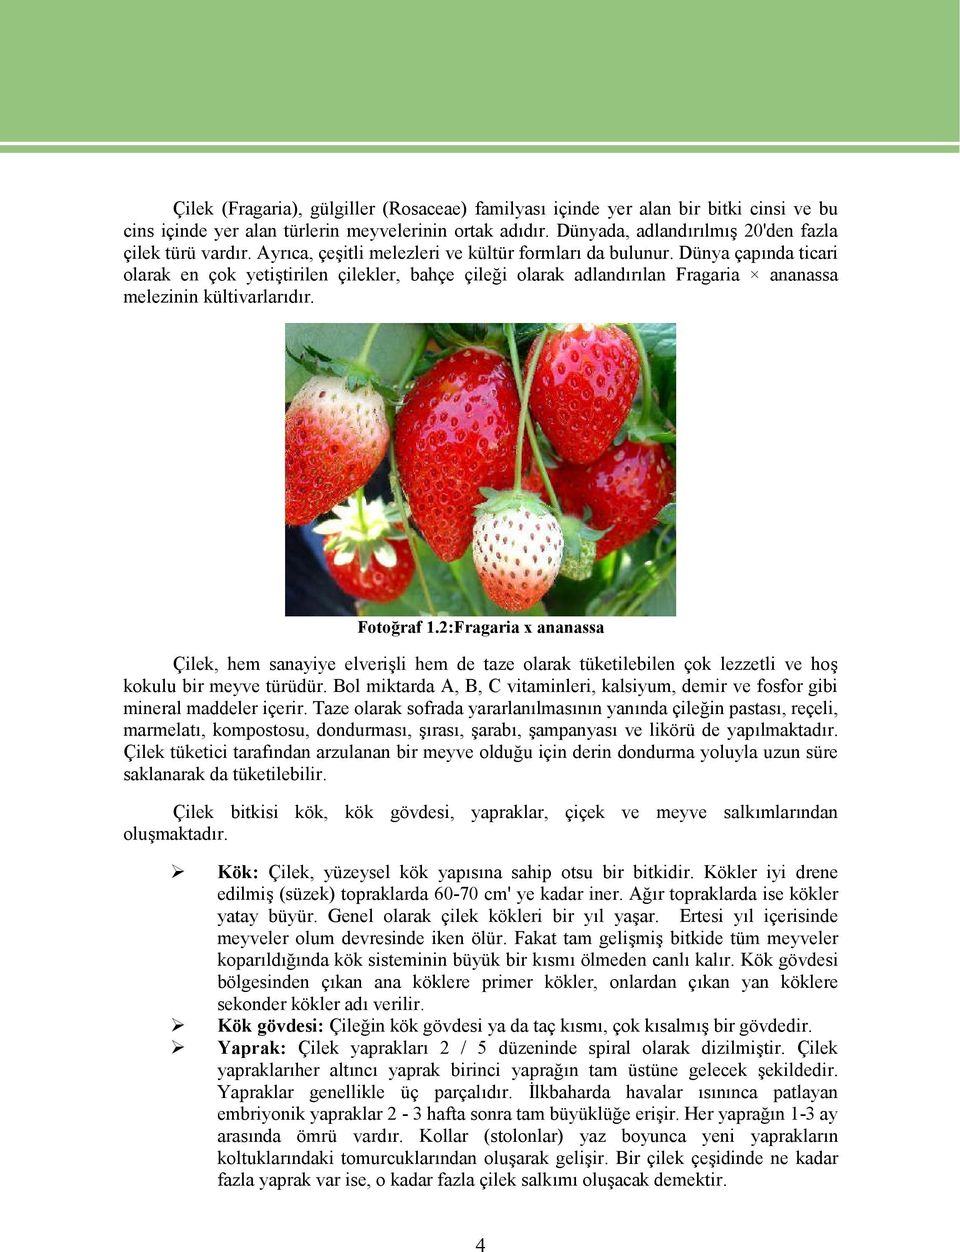 Fotoğraf 1.2:Fragaria x ananassa Çilek, hem sanayiye elverişli hem de taze olarak tüketilebilen çok lezzetli ve hoş kokulu bir meyve türüdür.